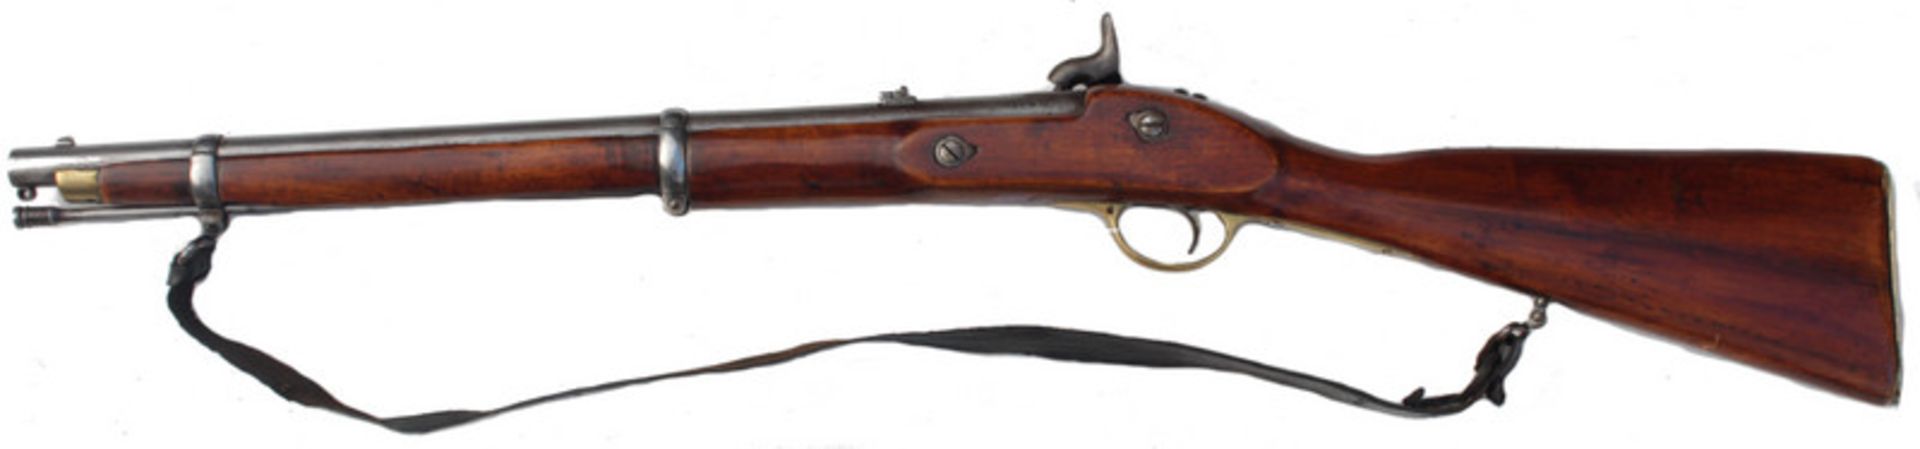 Enfield Carbine, wohl britisch-indisch, 2. H. 19. Jhd. - Image 2 of 12